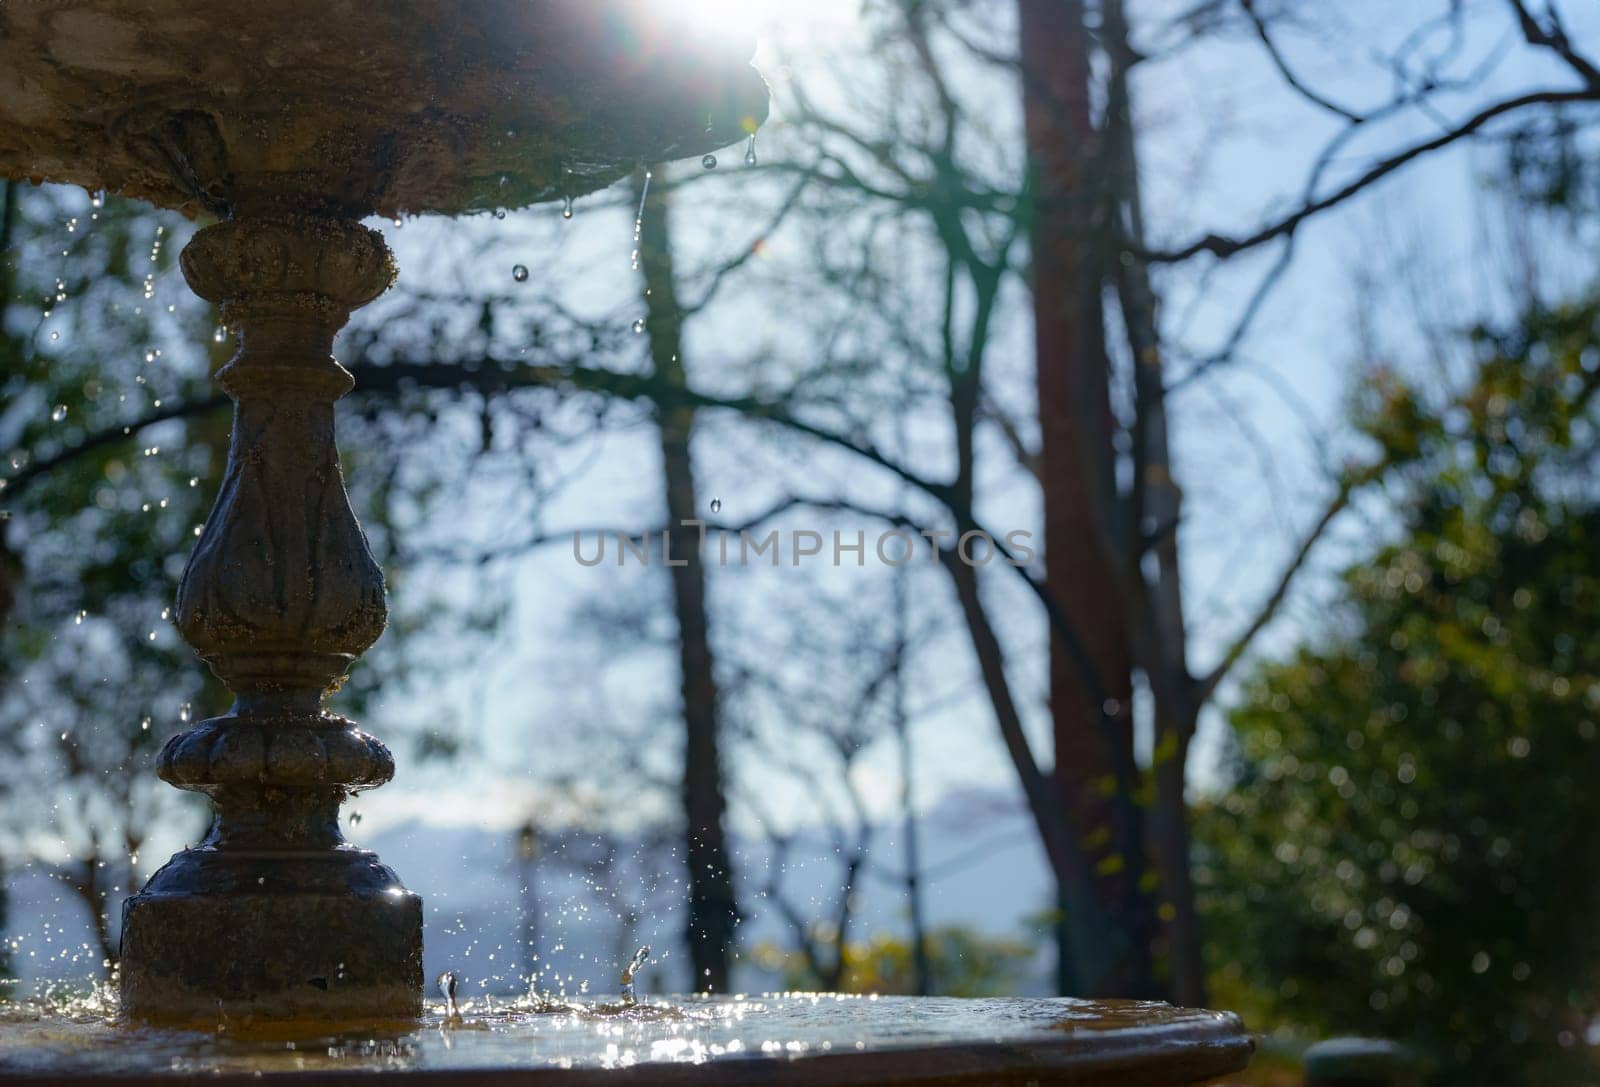 water from a public fountain splashing in the sunlight by joseantona